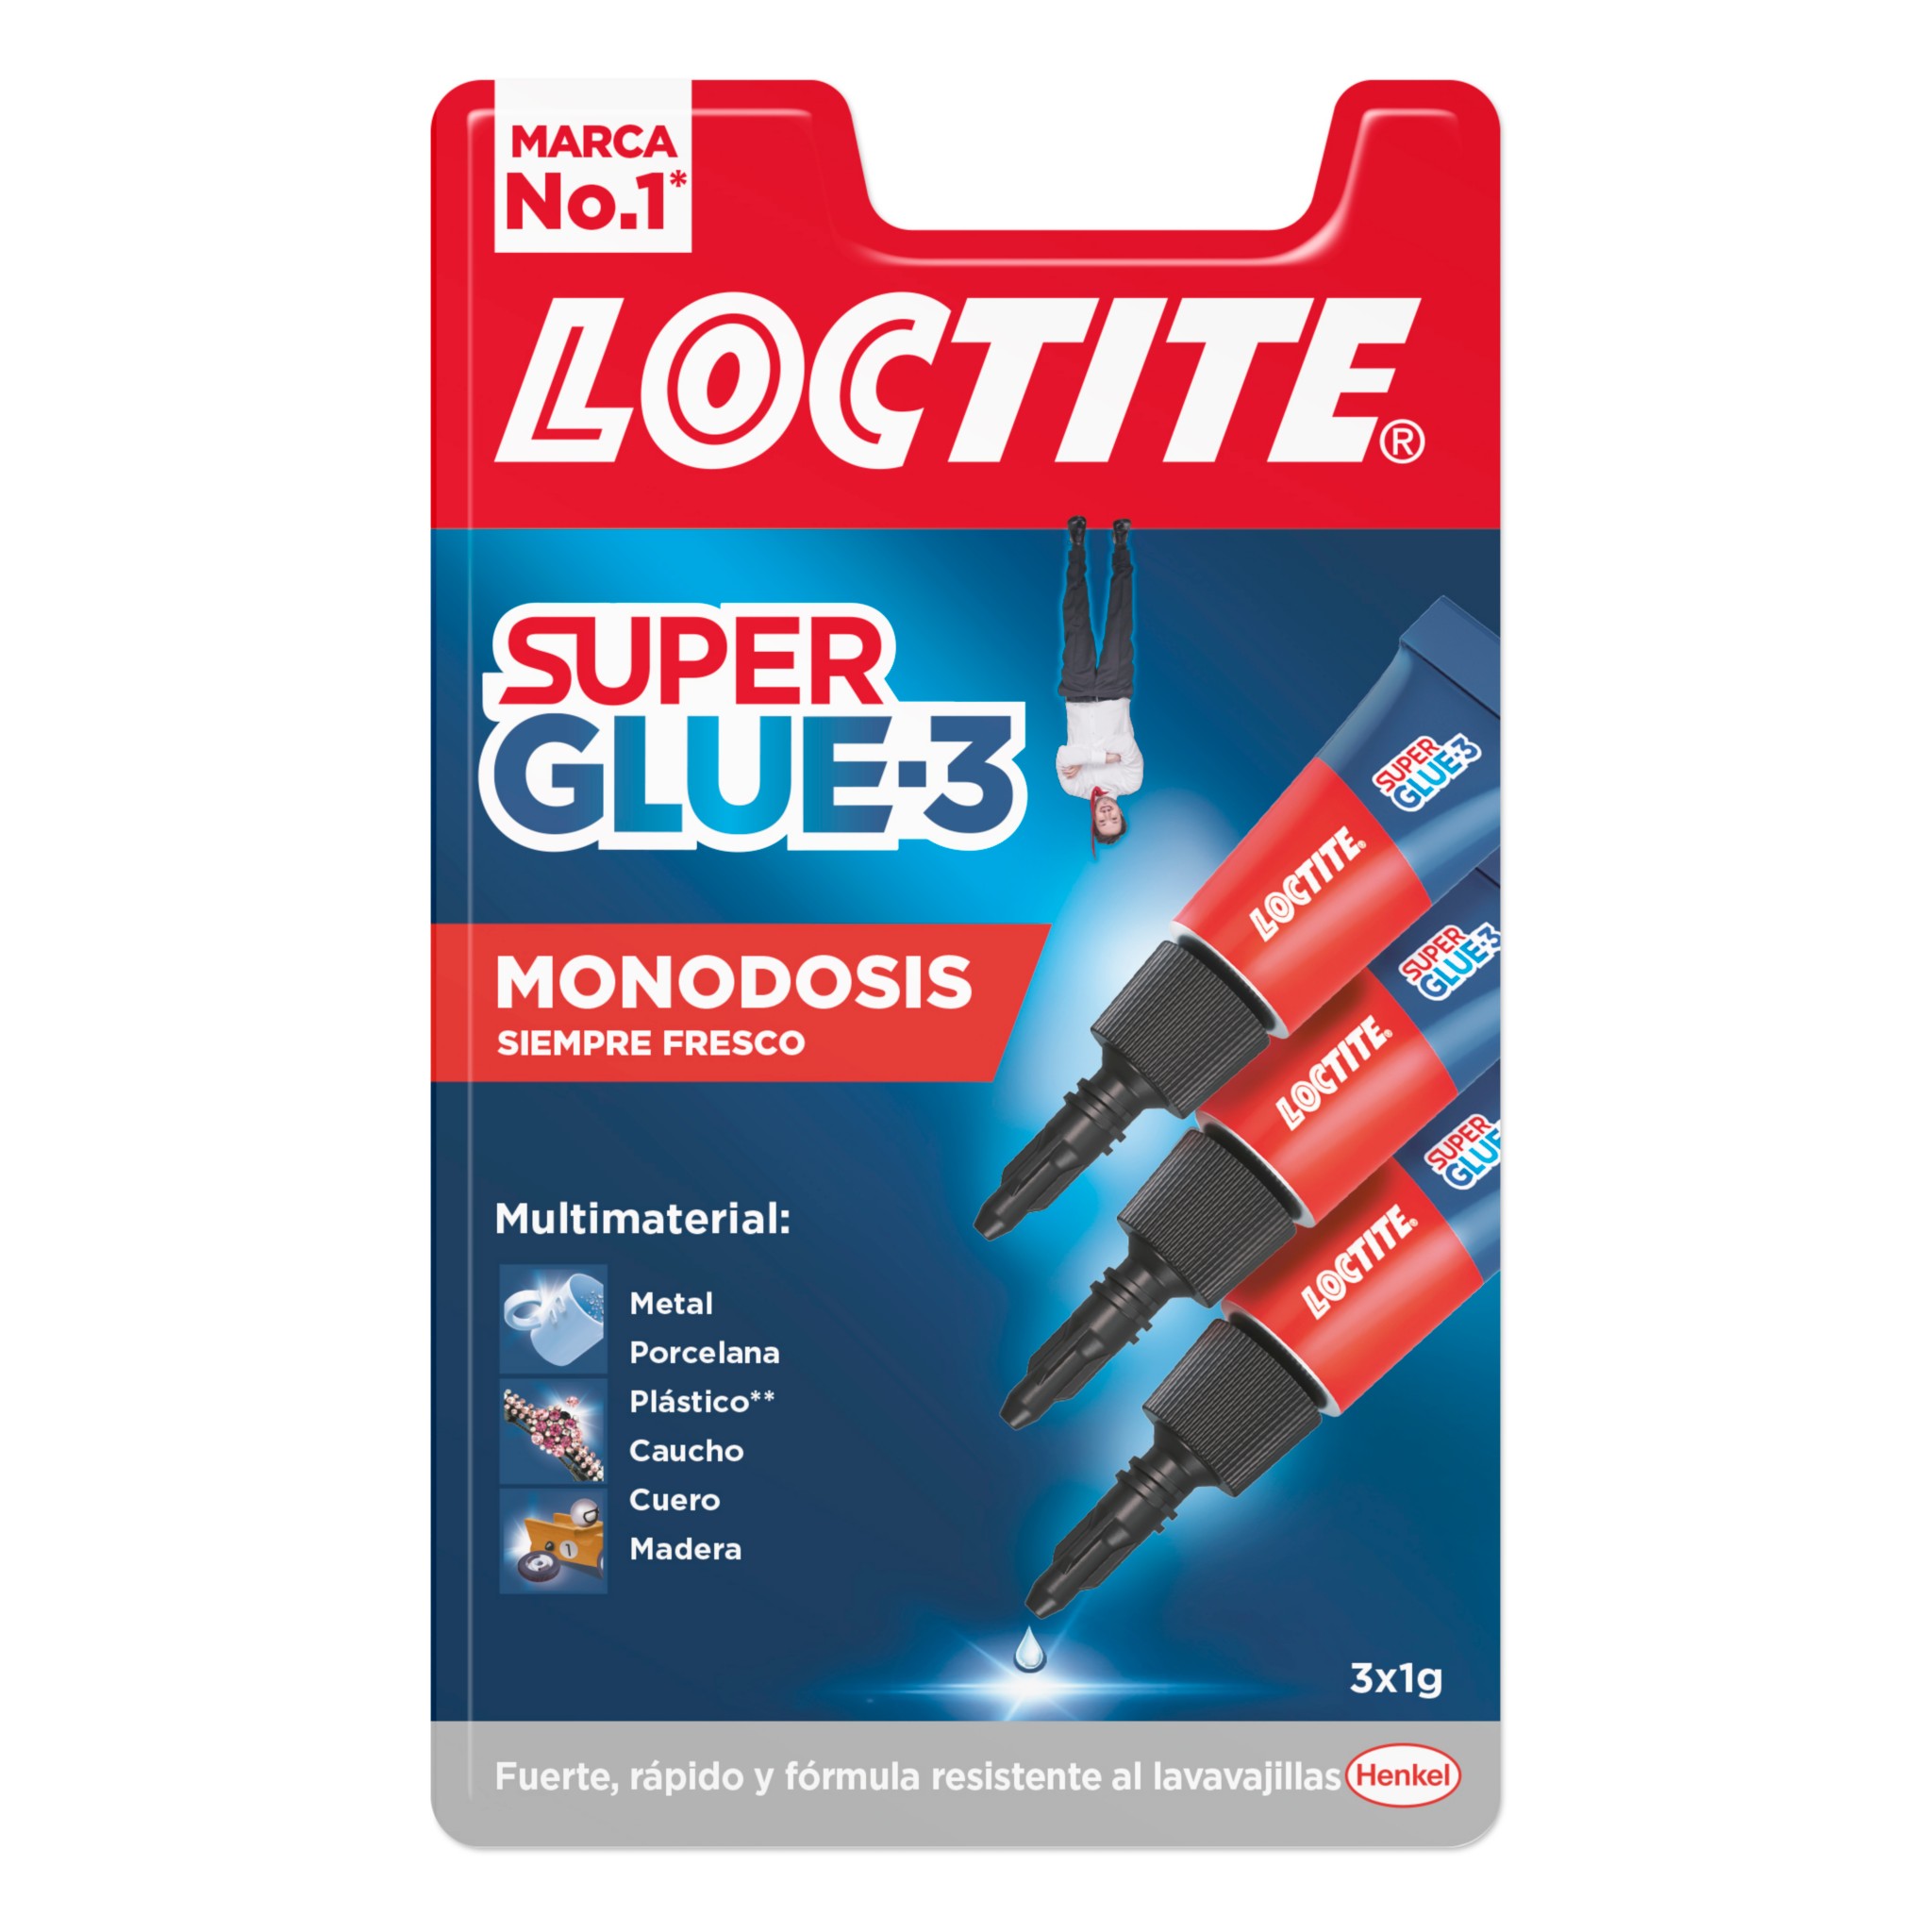 Super Glue-3 Monodosis